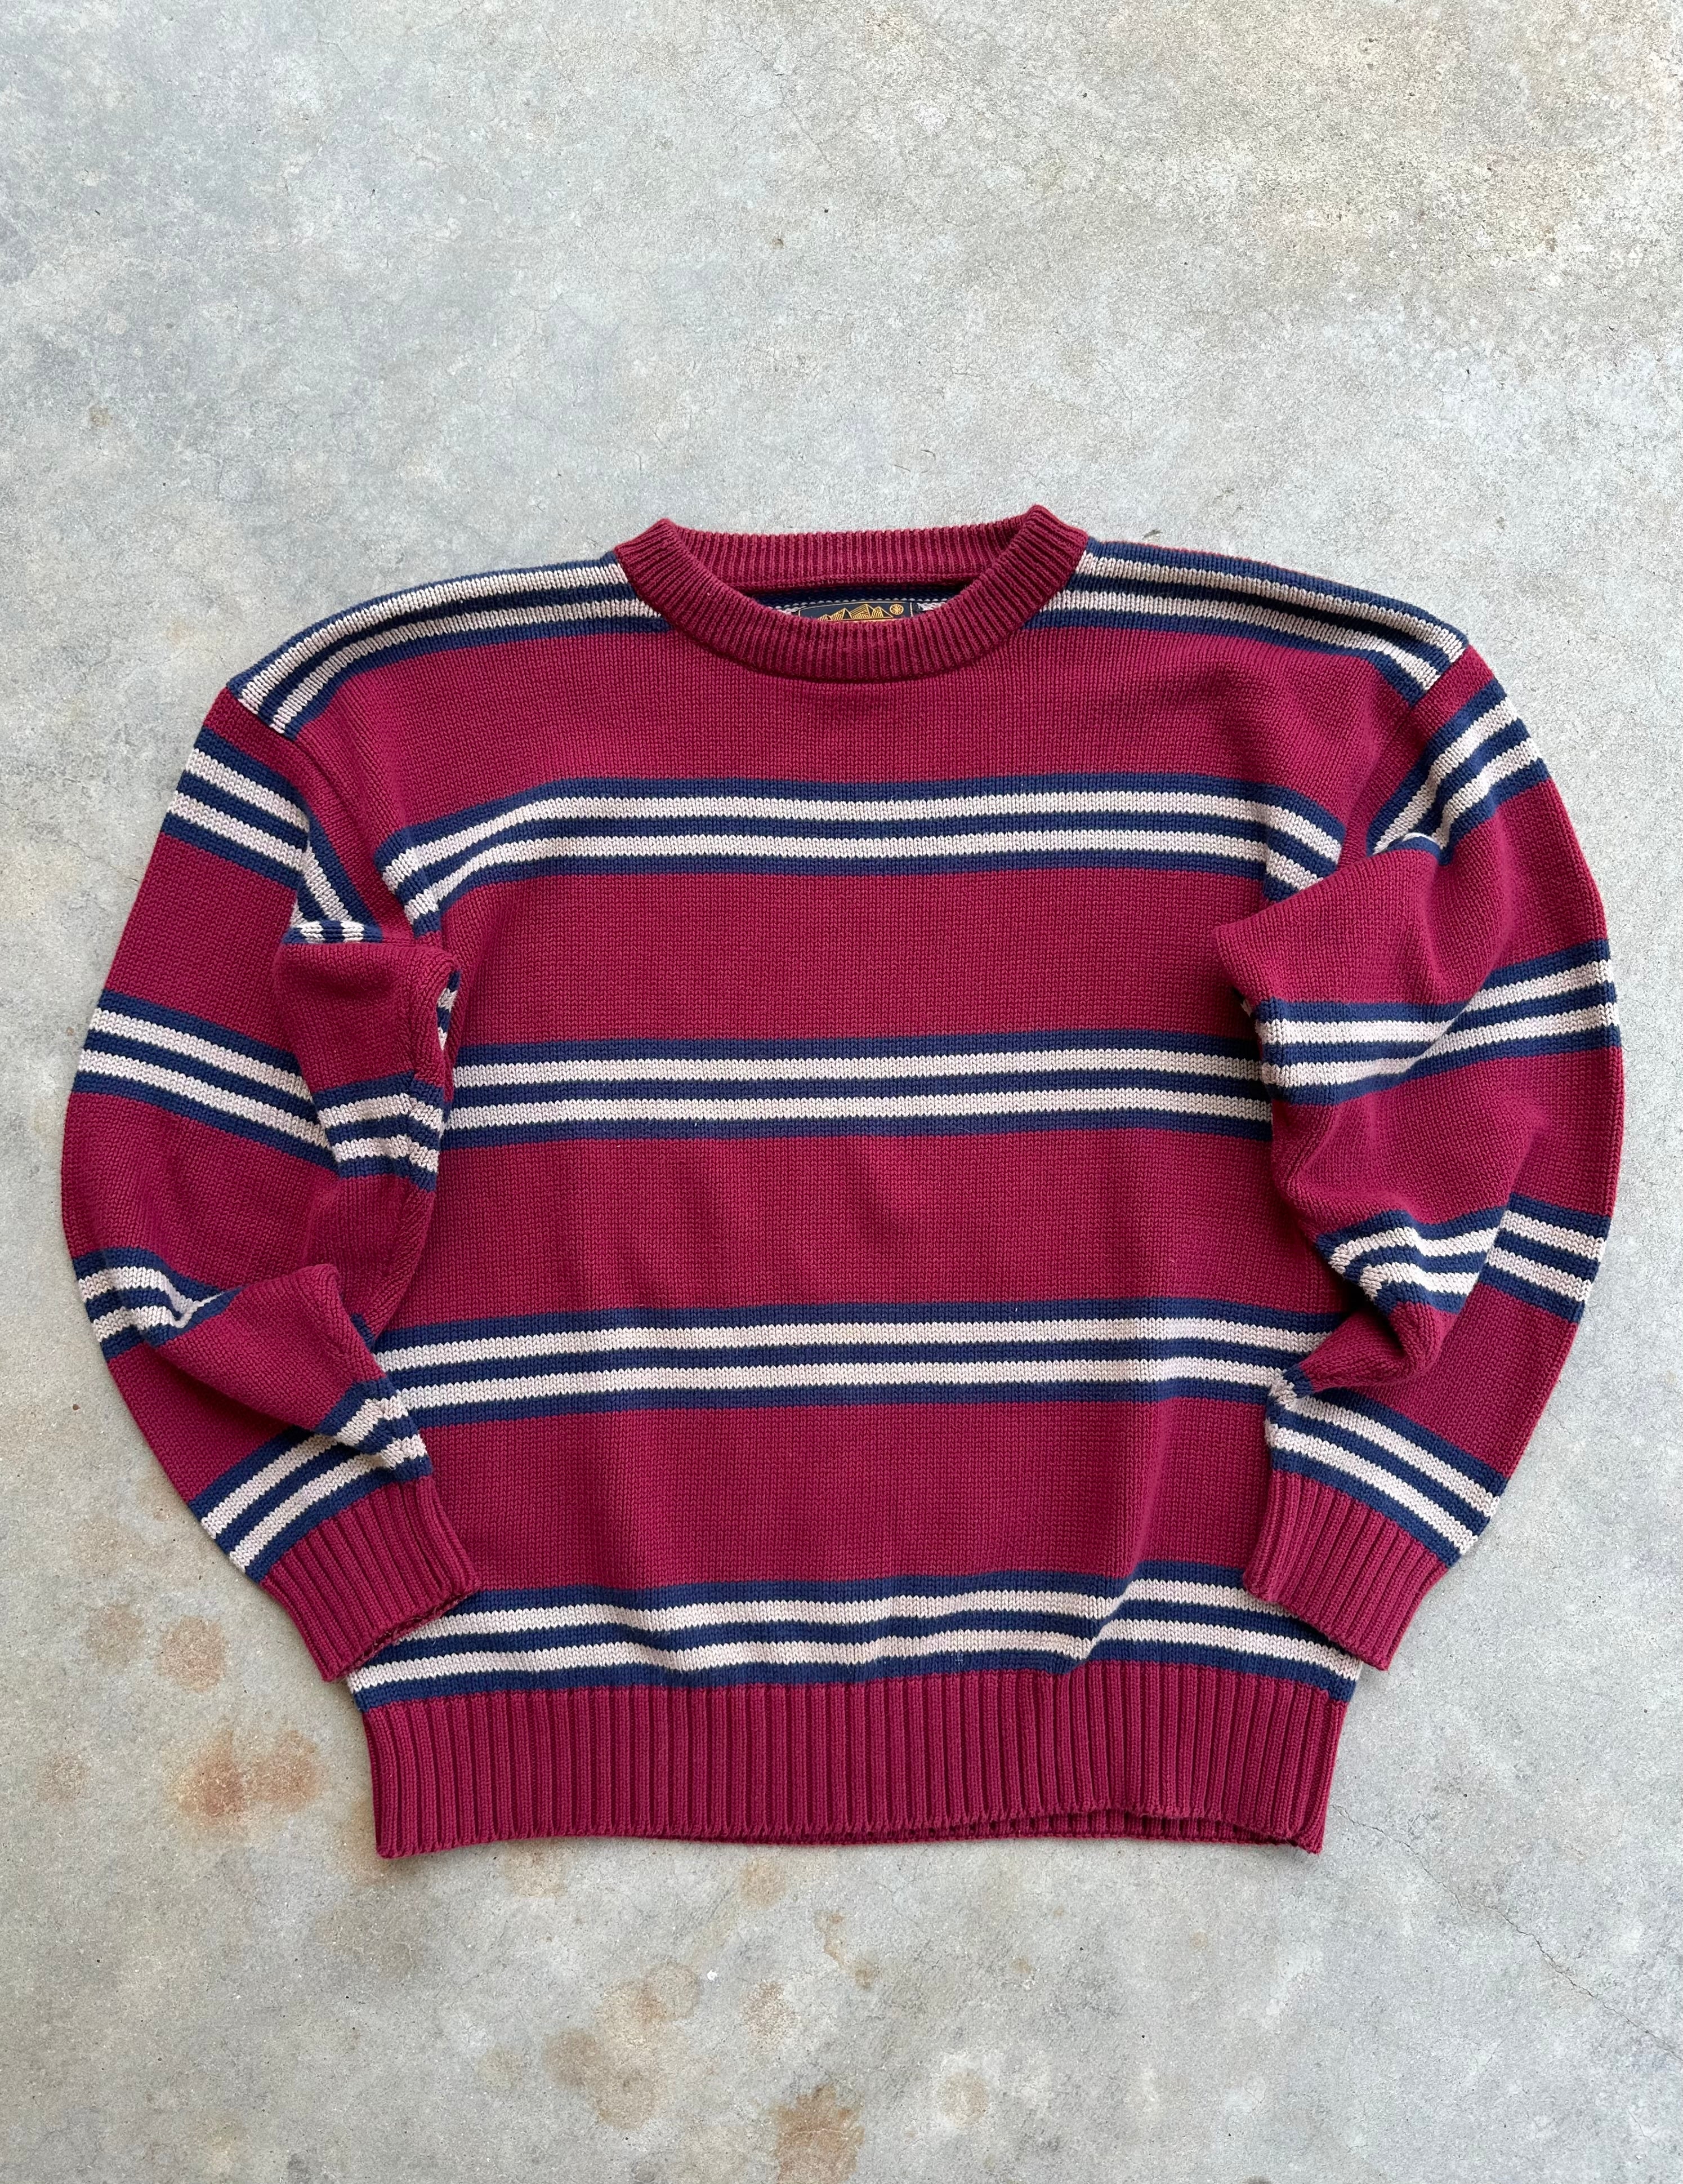 1990s Eddie Bauer Knit Sweater (L)